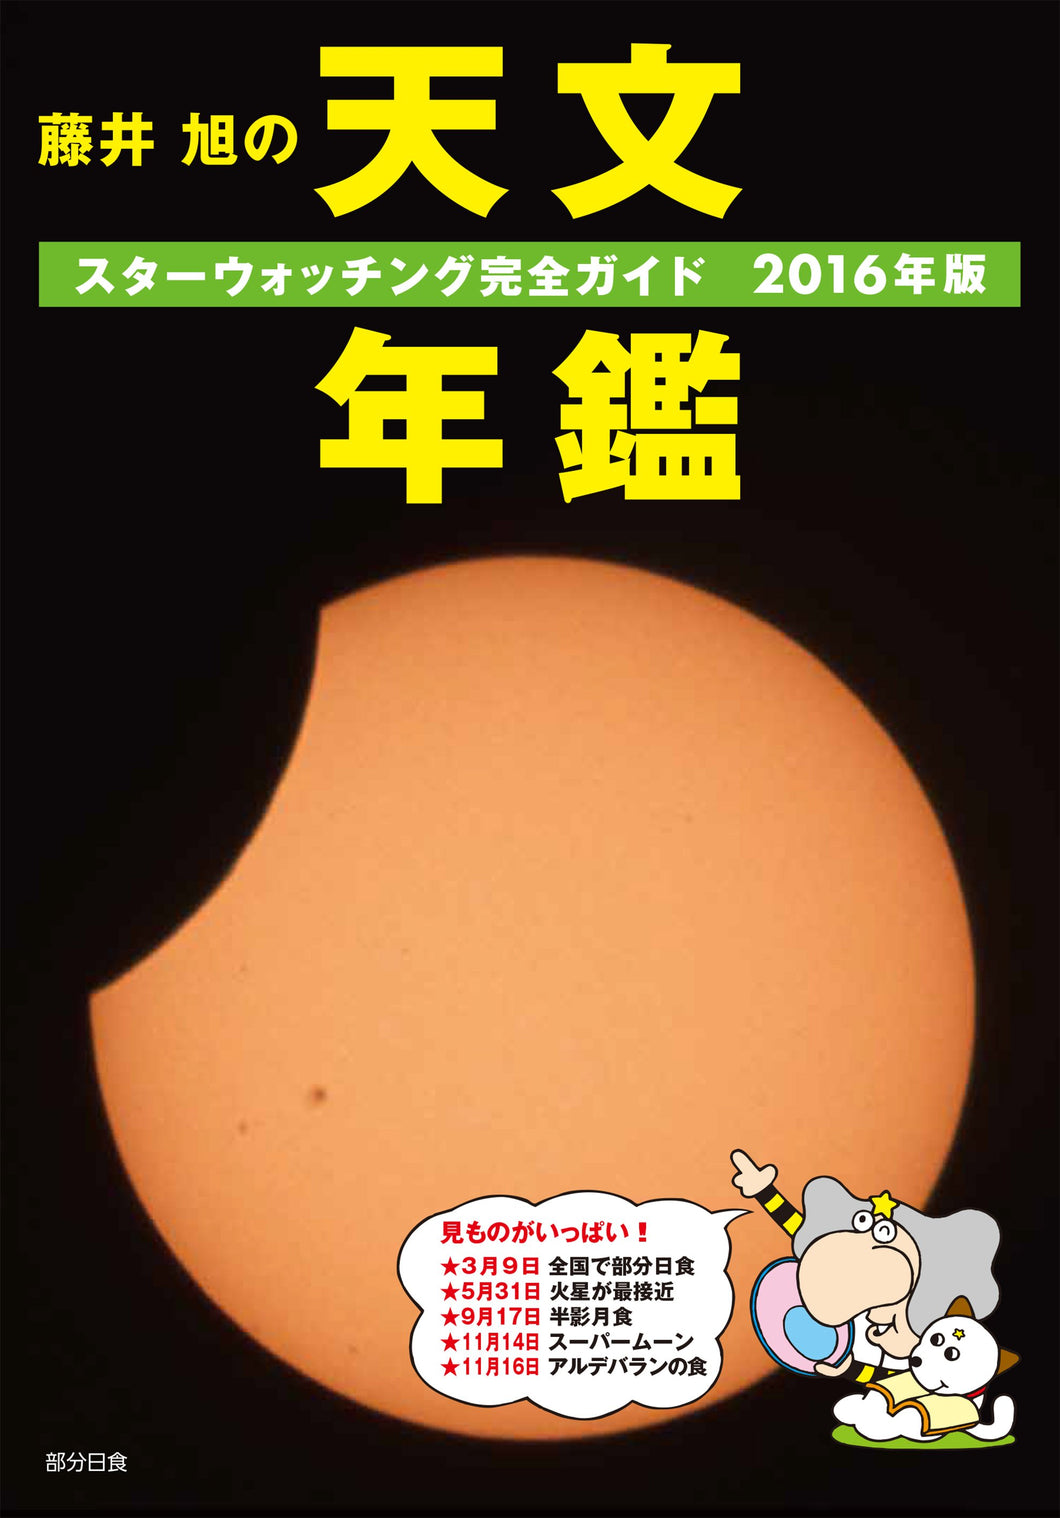 Akira Fujii's Astronomy Yearbook 2016